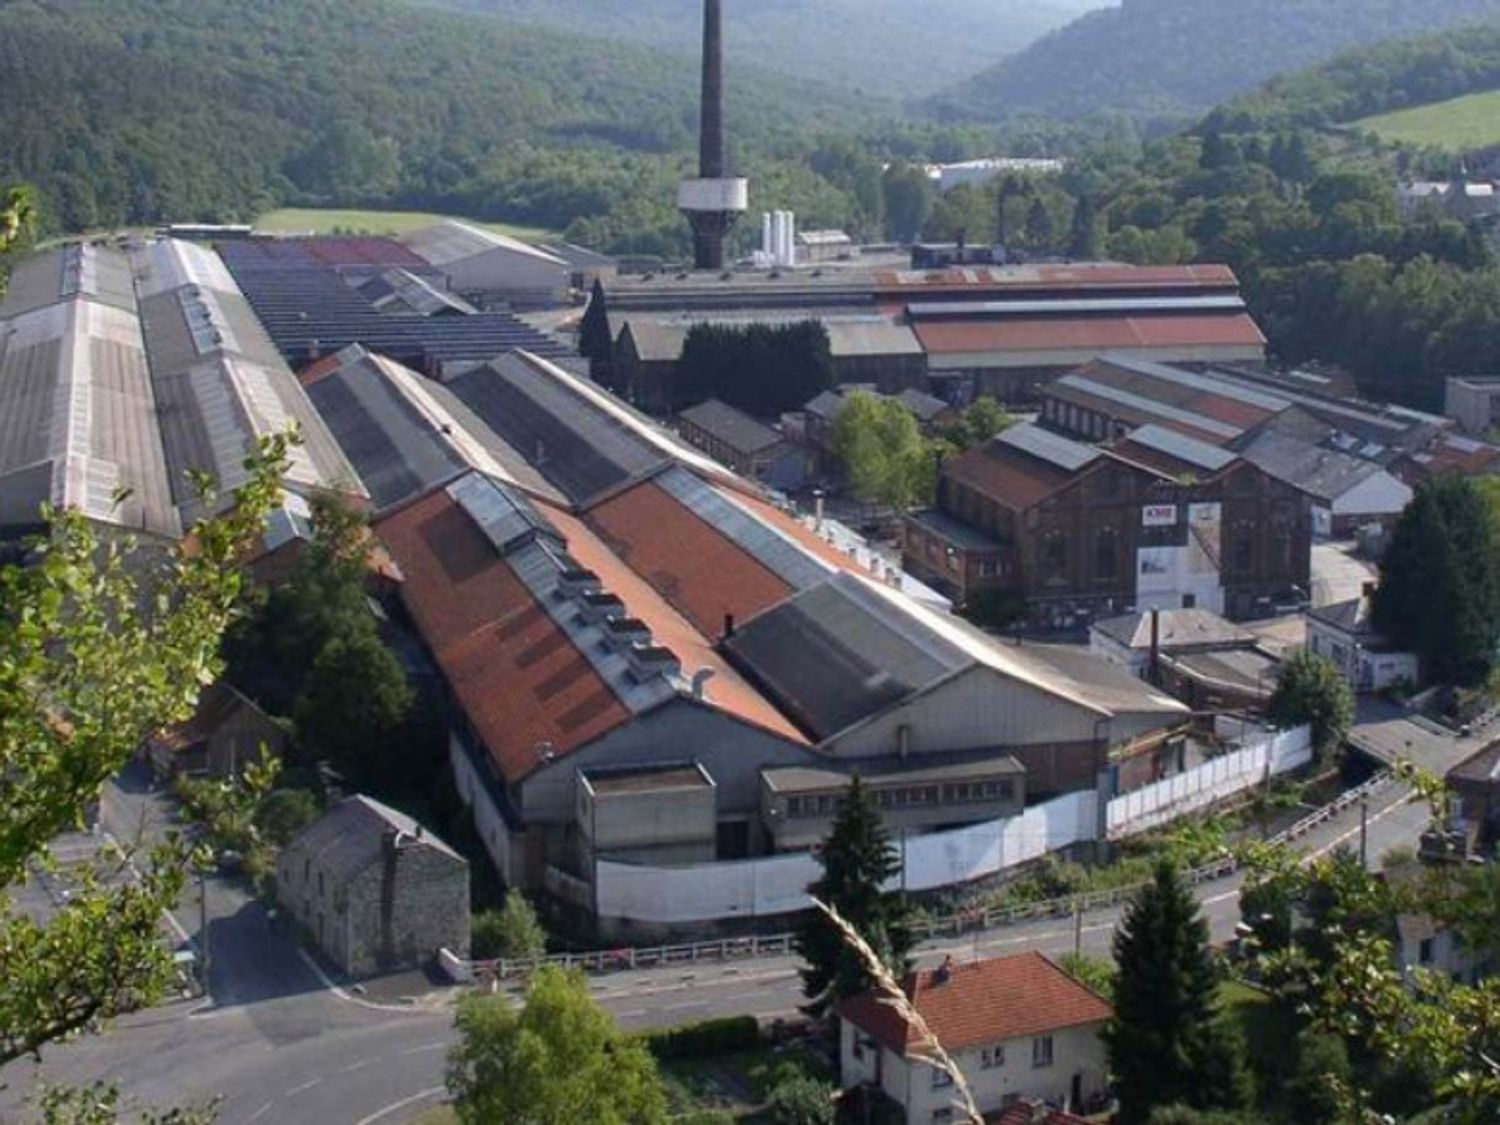 120 emplois industriels menacés à Fromelennes